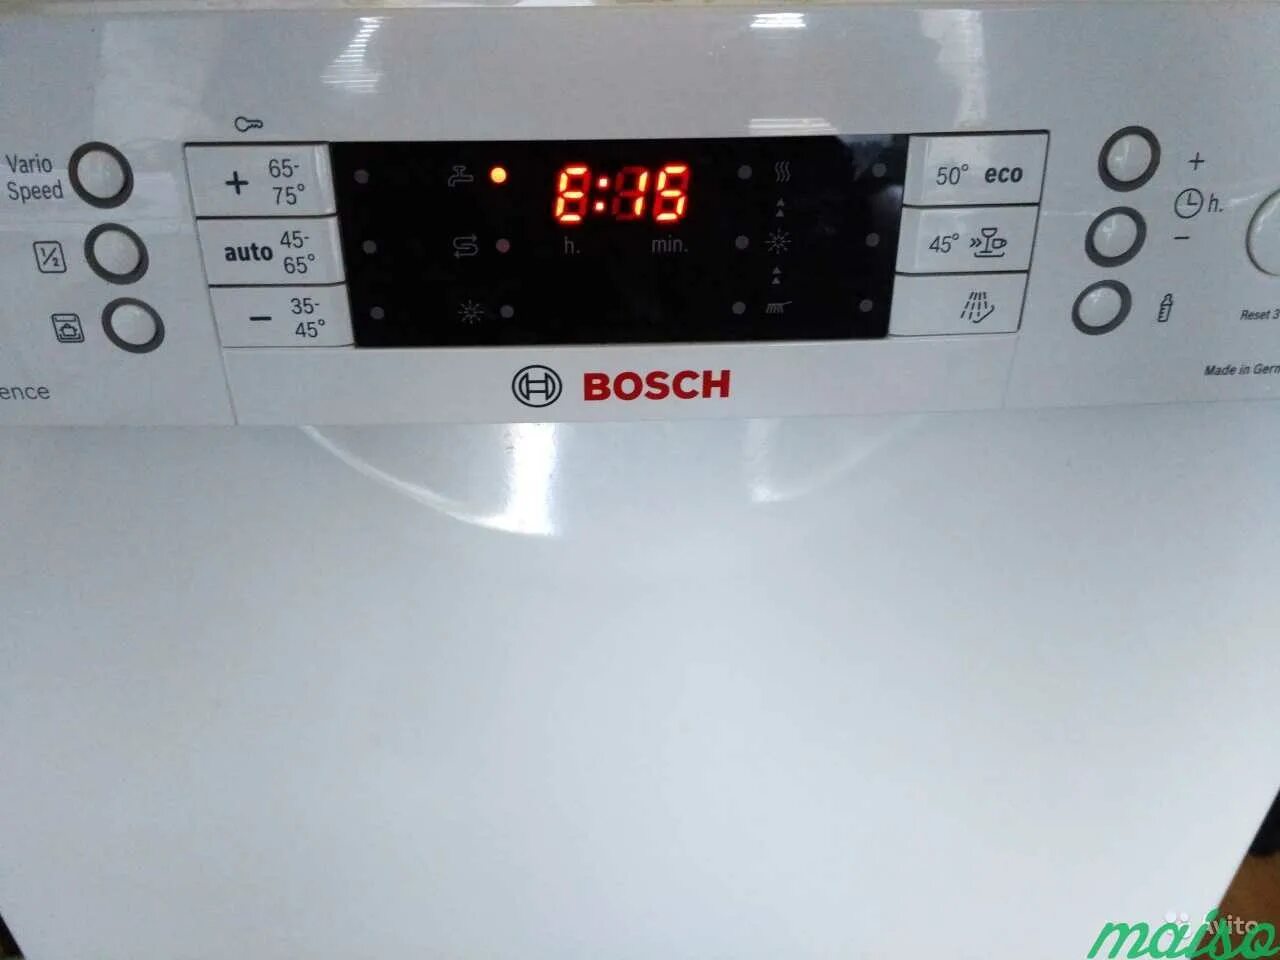 Посудомойка бош ошибка е. Посудомоечная бош ошибка е90. Ошибка посудомоечной машины Bosch е90. Посудомоечная машина бош ошибка е 19. ПММ бош ошибка е0.